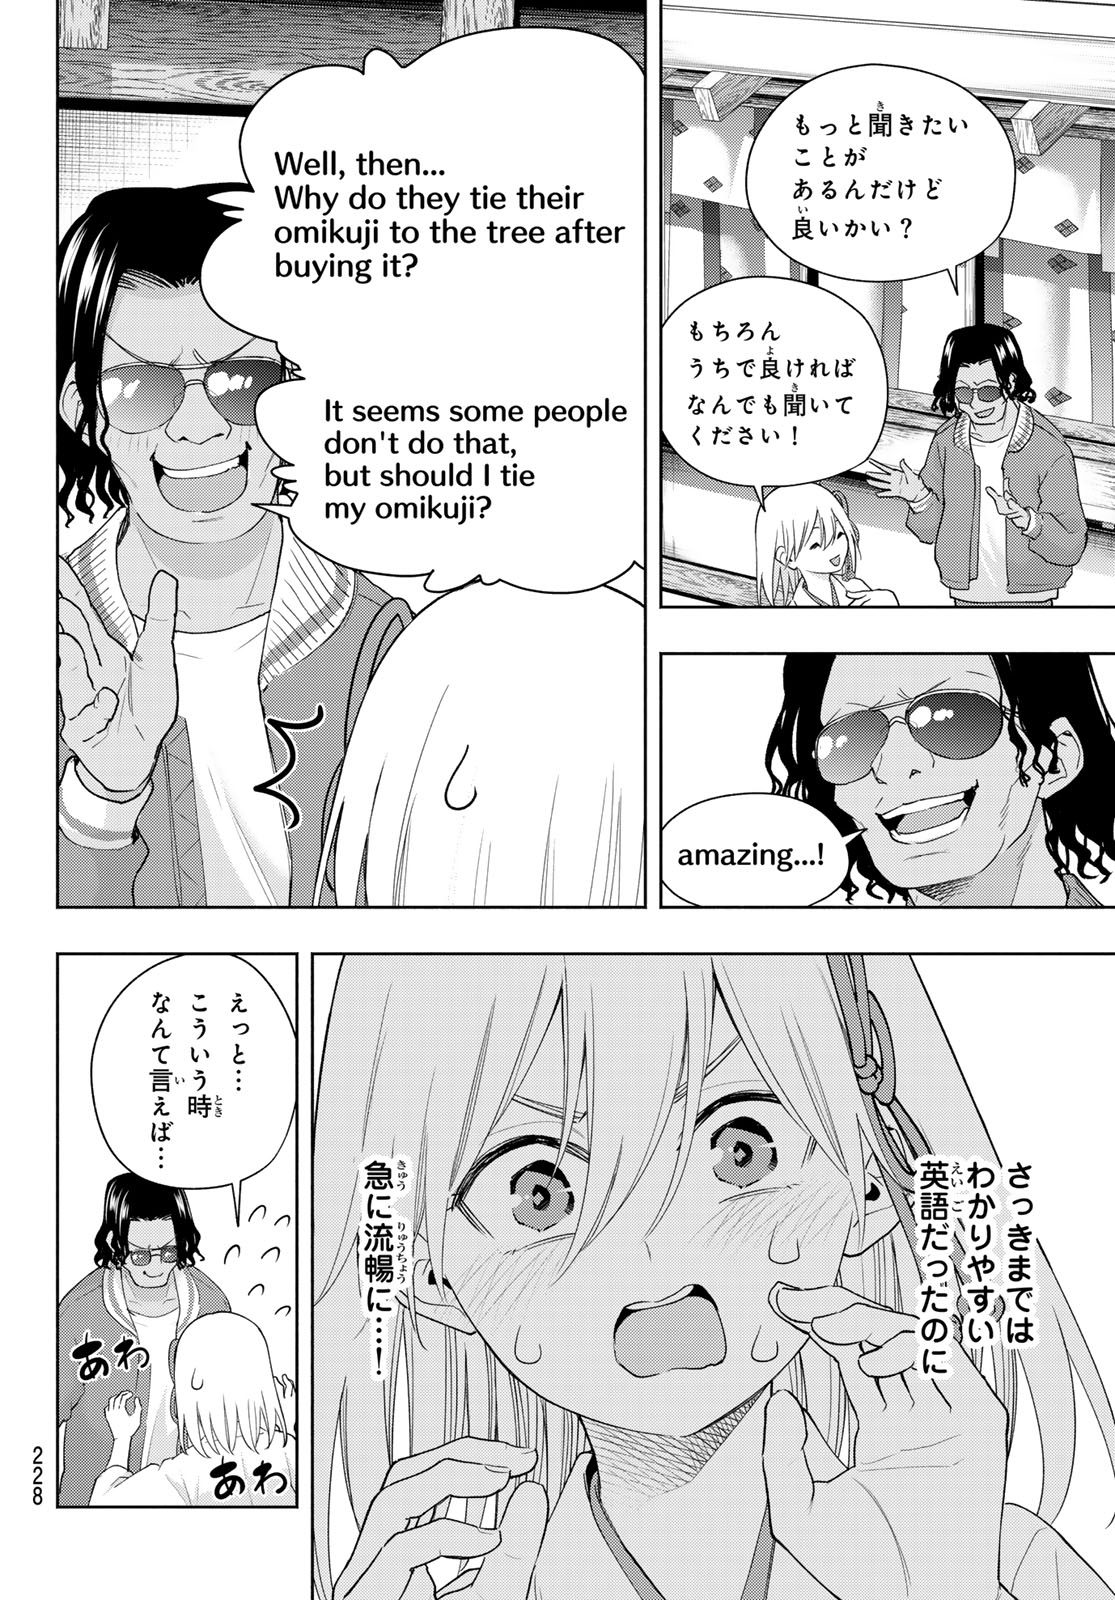 Amagami-san Chi no Enmusubi - Chapter 130 - Page 6